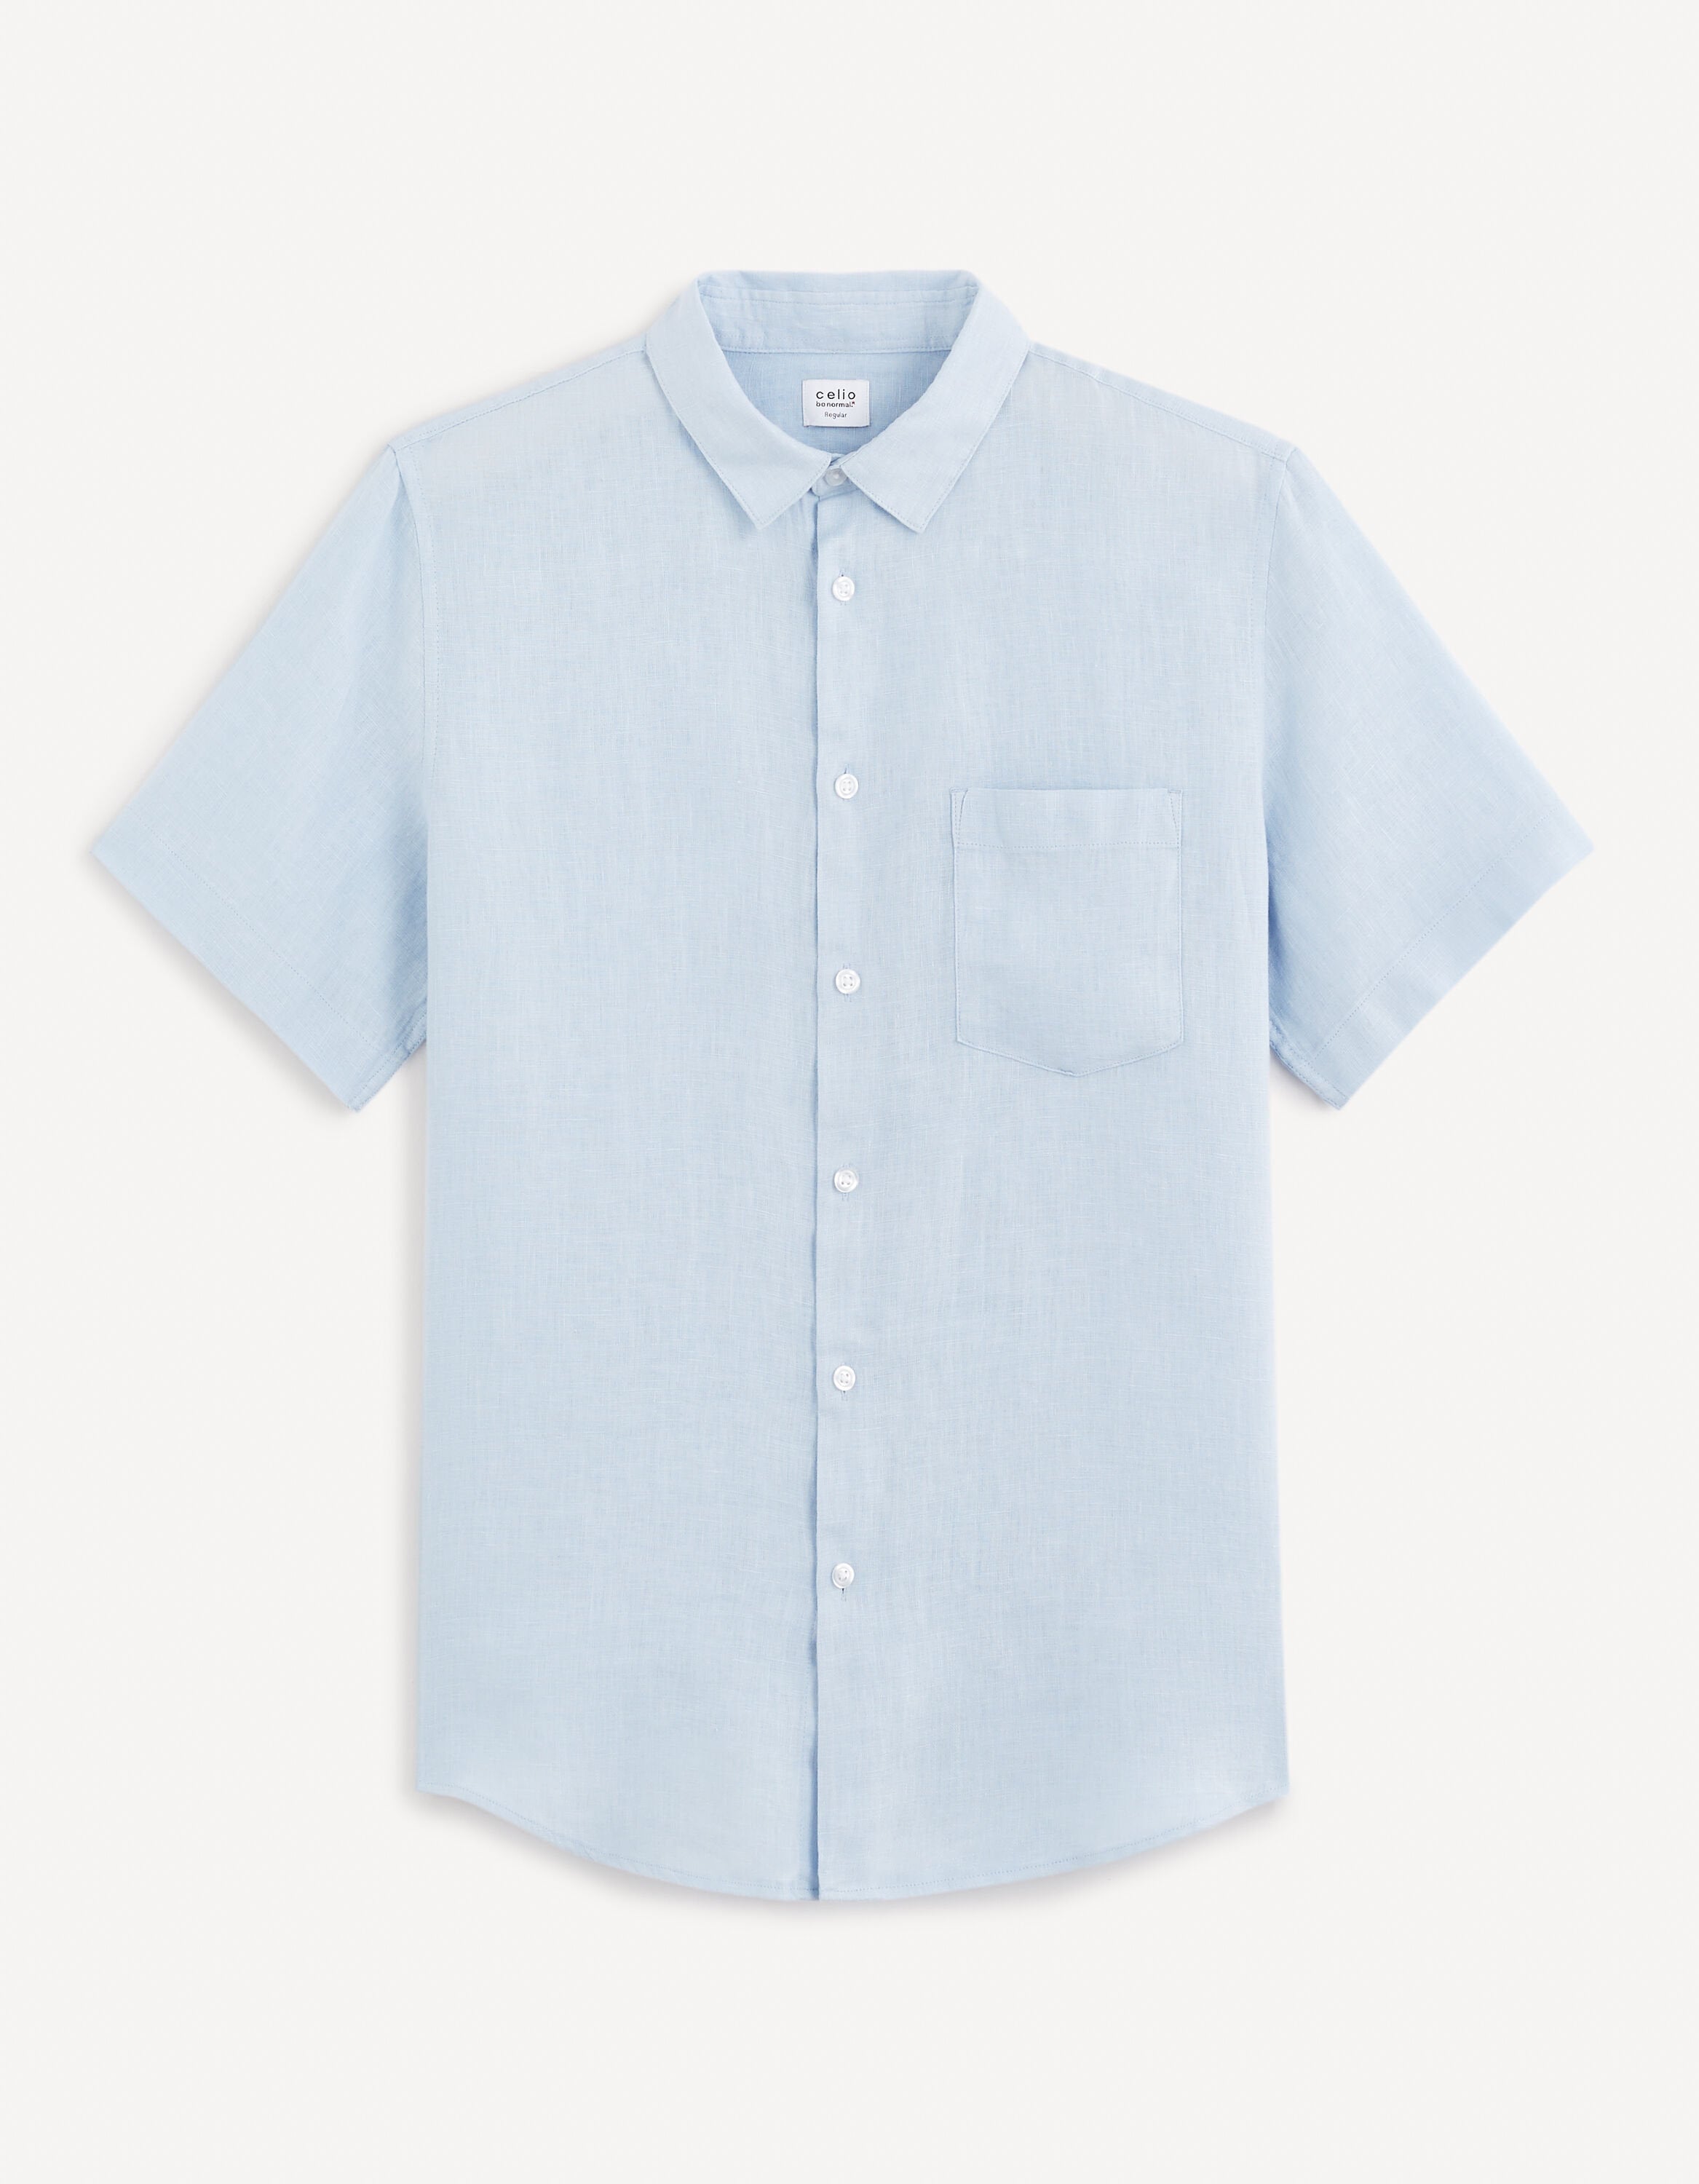 Regular Shirt 100% Linen_DAMARLIN_LIGHT BLUE_01